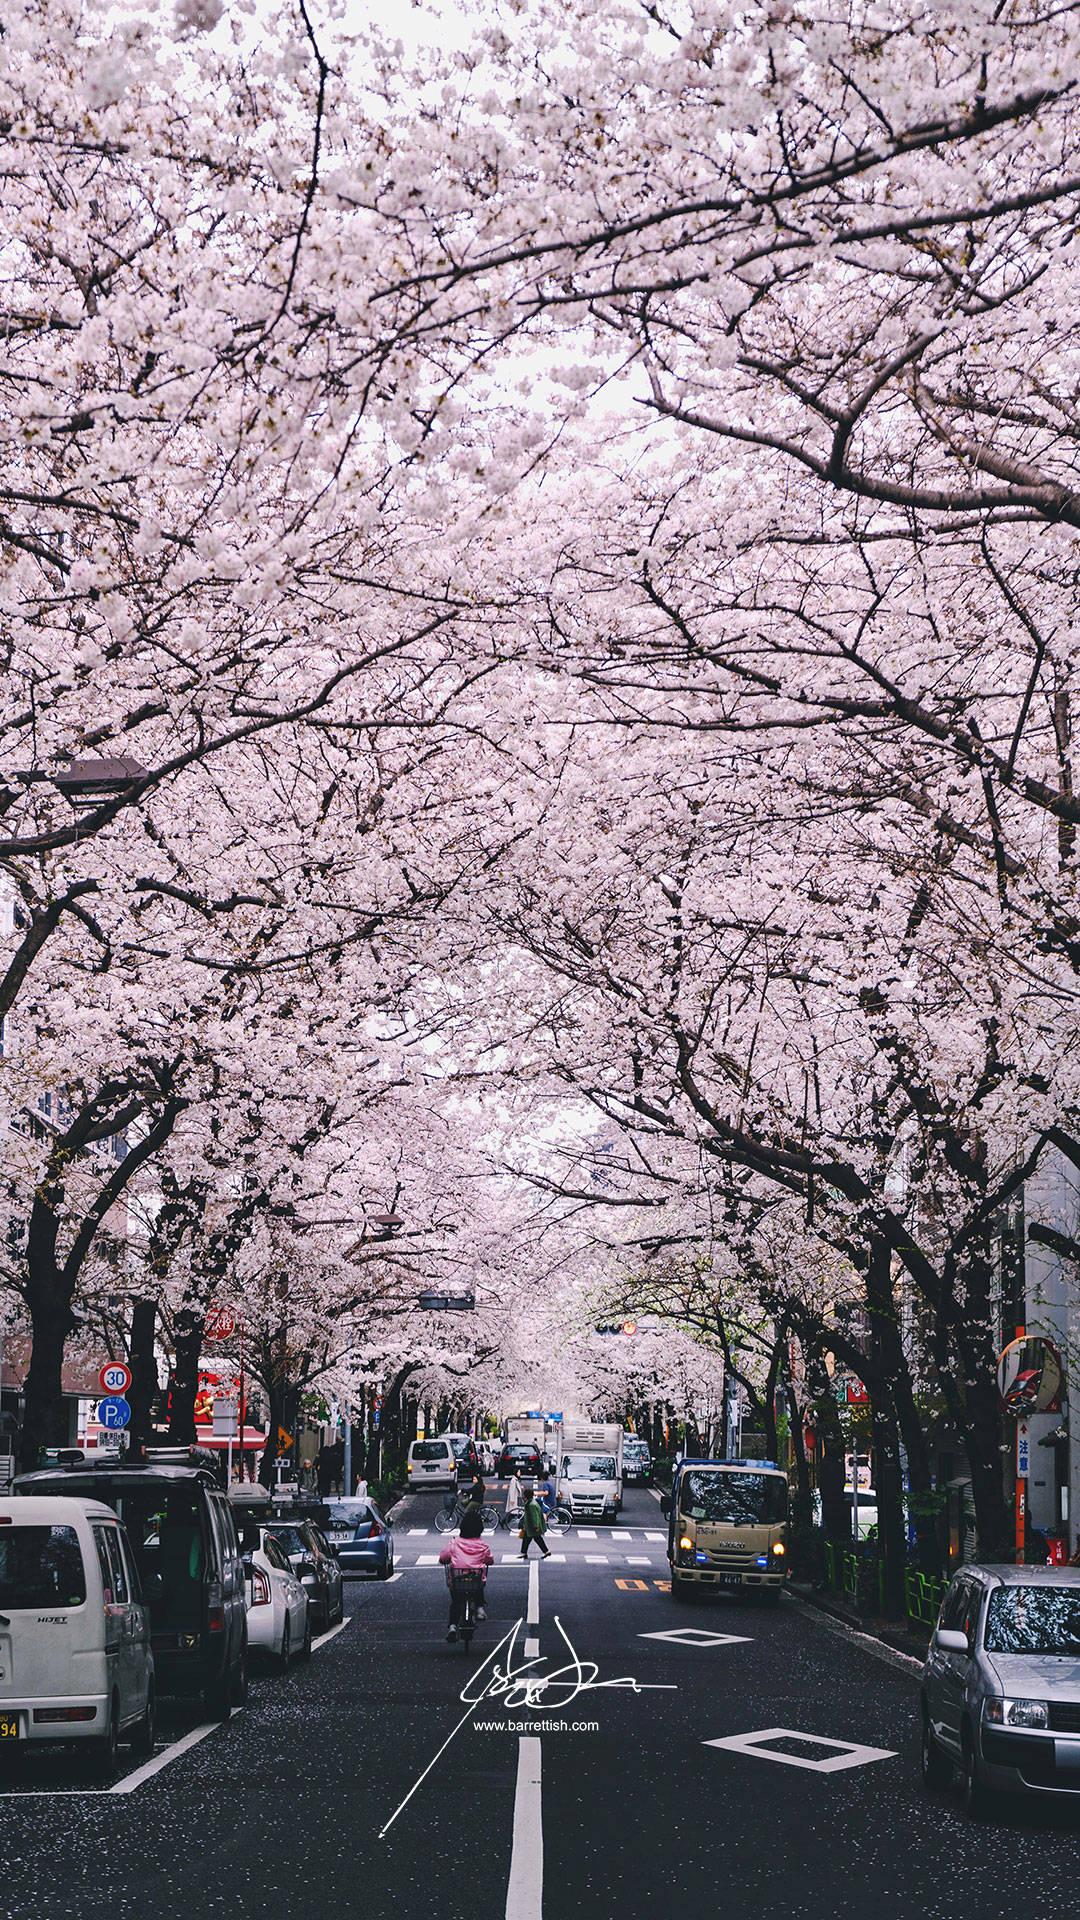 "witness The Splendor Of Japan's Cherry Blossoms" Wallpaper